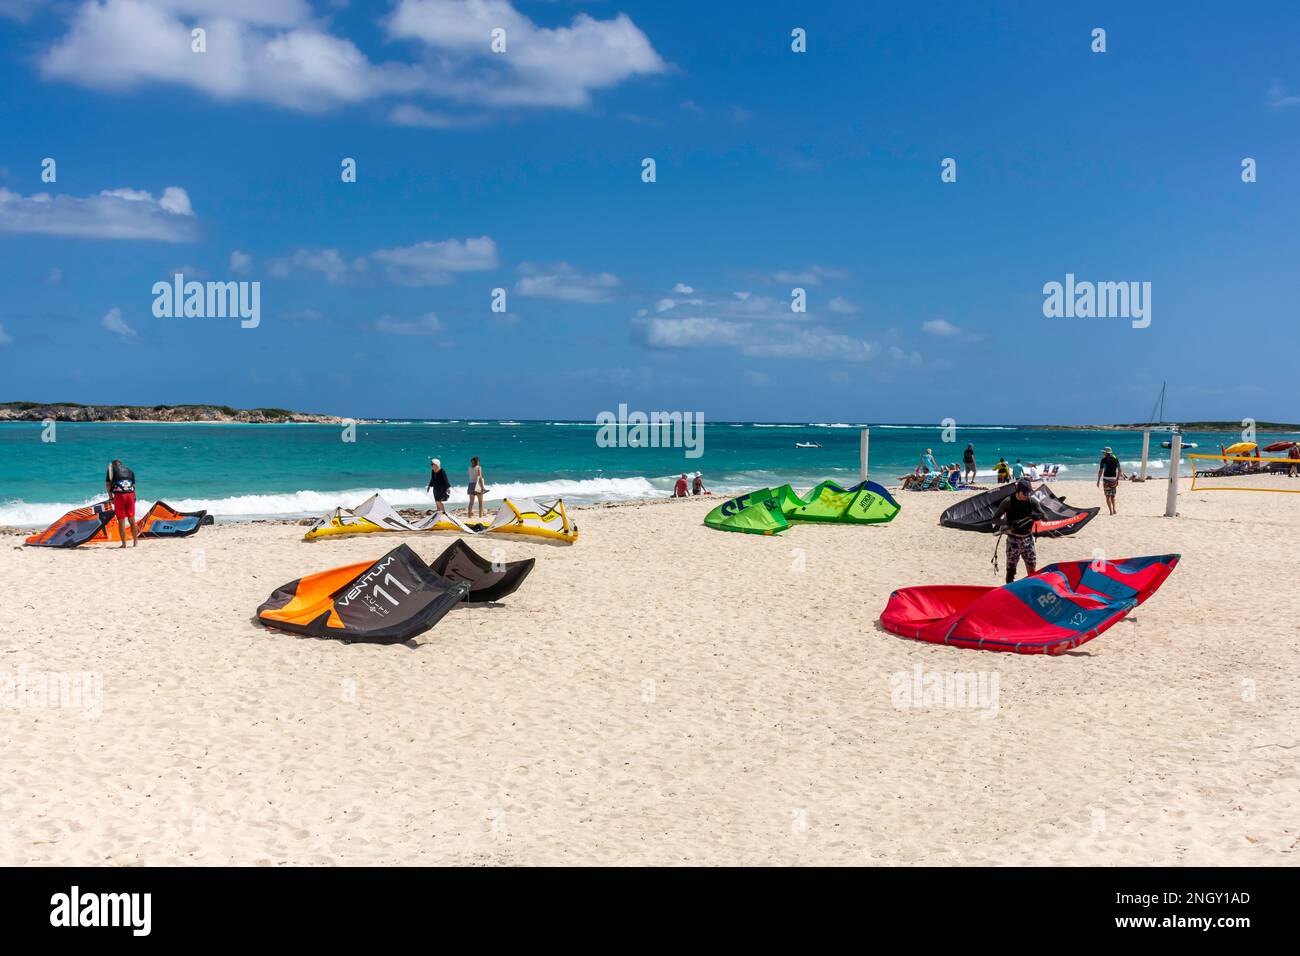 Kite surf voiles sur la plage, Orient Bay (Baie orientale), St Martin (Saint-Martin), Petites Antilles, Caraïbes Banque D'Images